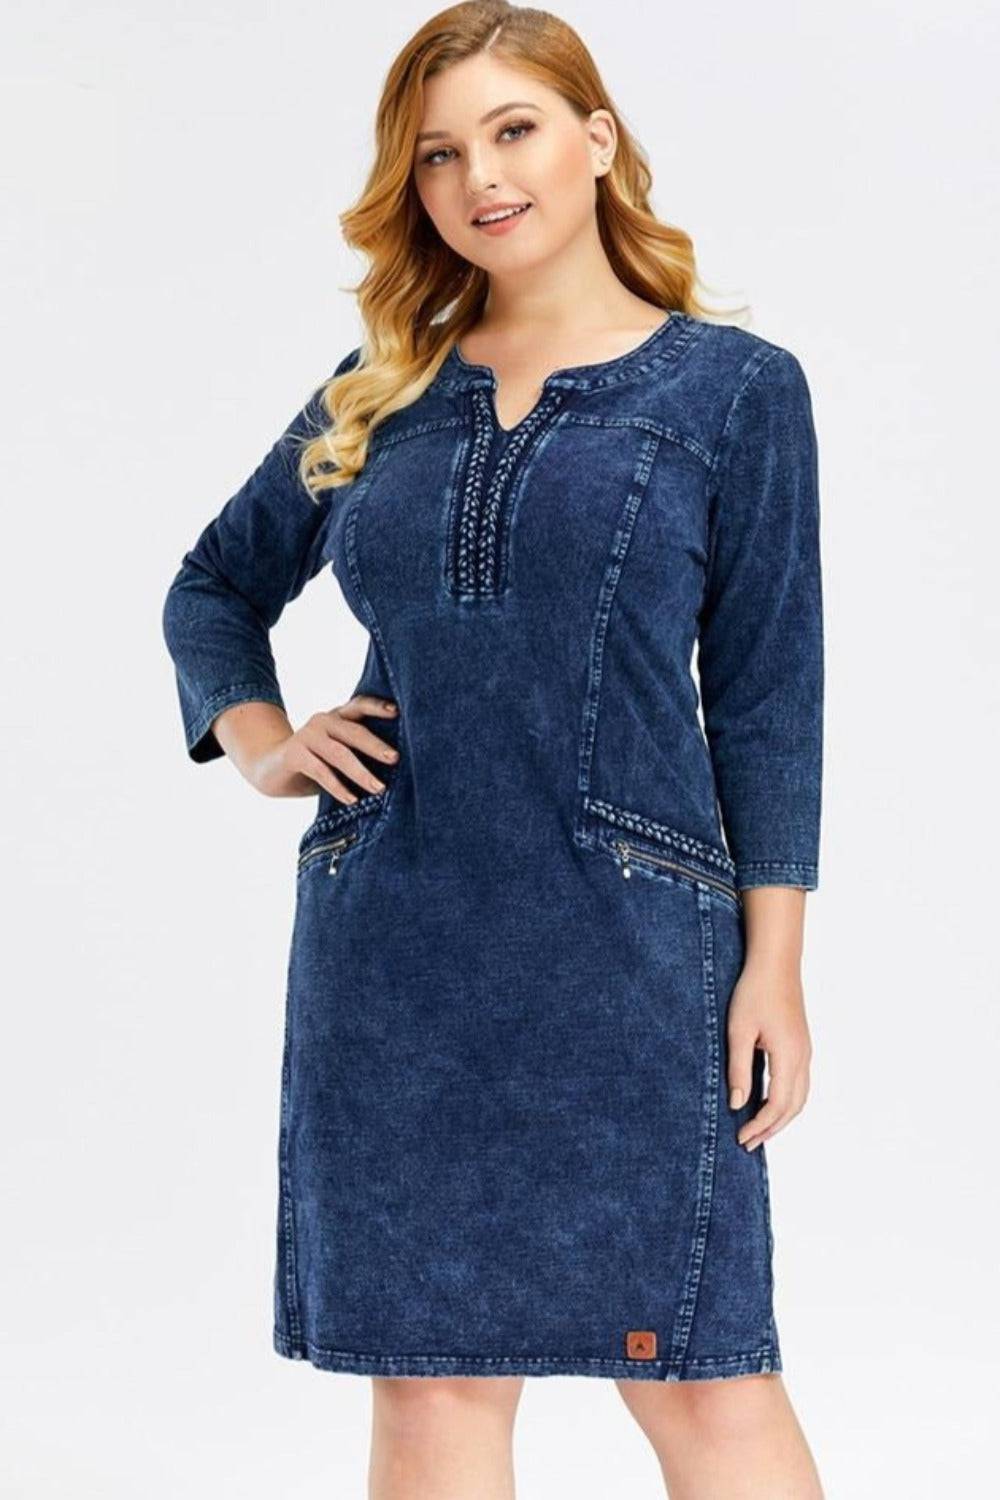 Blue Plus Size Long Sleeve Elastic Bodycon Slim Fit Midi Denim Dress - TGC Boutique - Plus Size Denim Dress